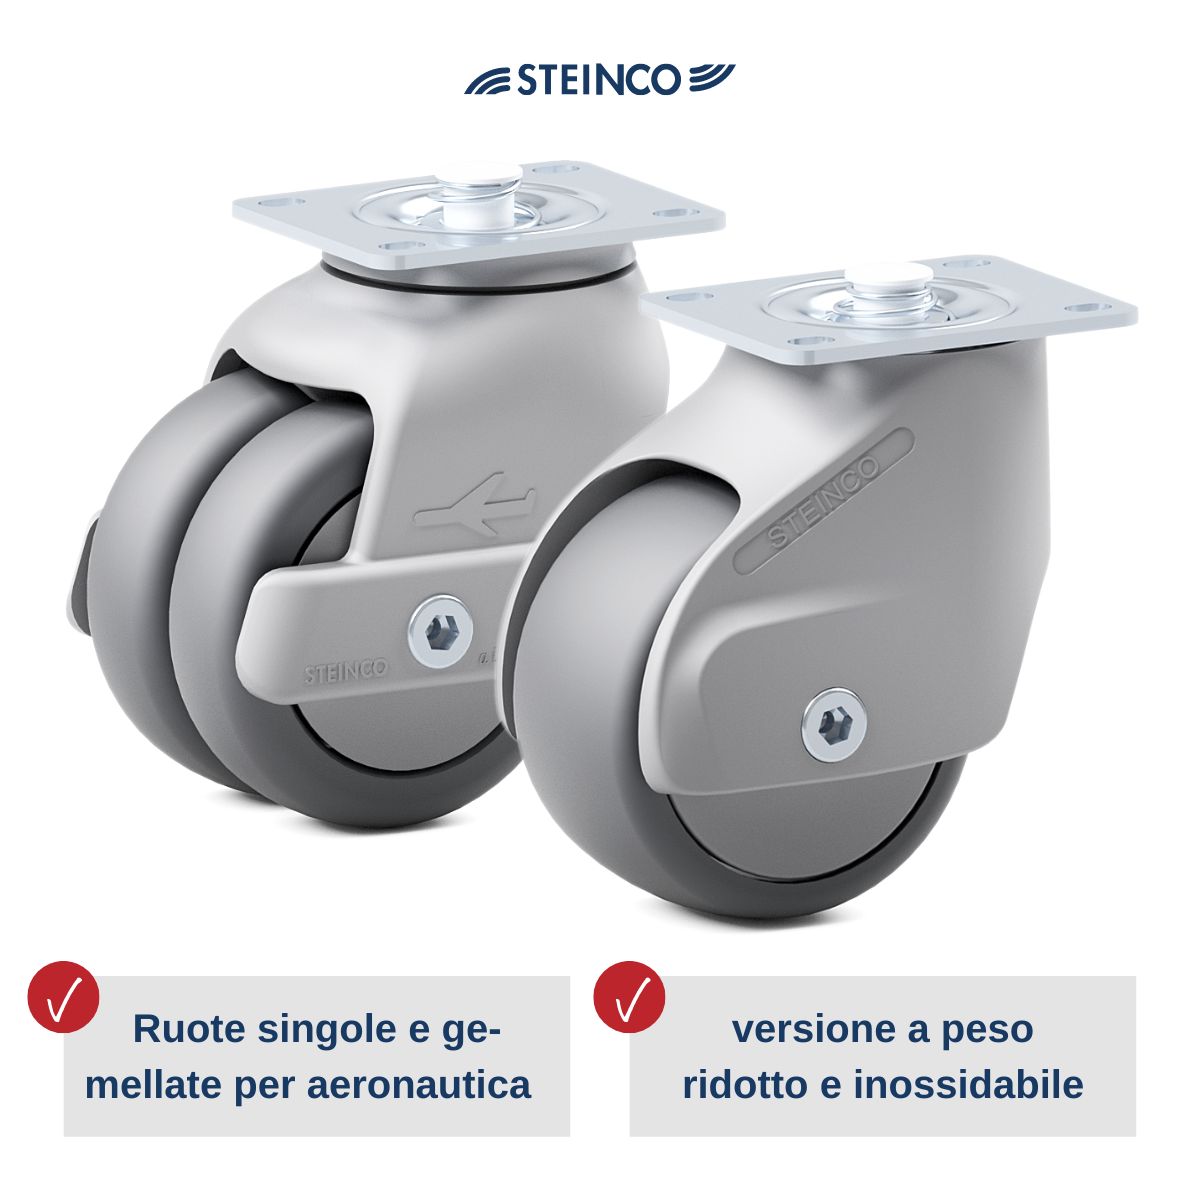 Le ruote e i supporti Steinco per carrelli di servizio e trolley di aerei, manovrabili in spazi ristretti, leggeri, sicuri e sviluppati appositamente per l’aeronautica